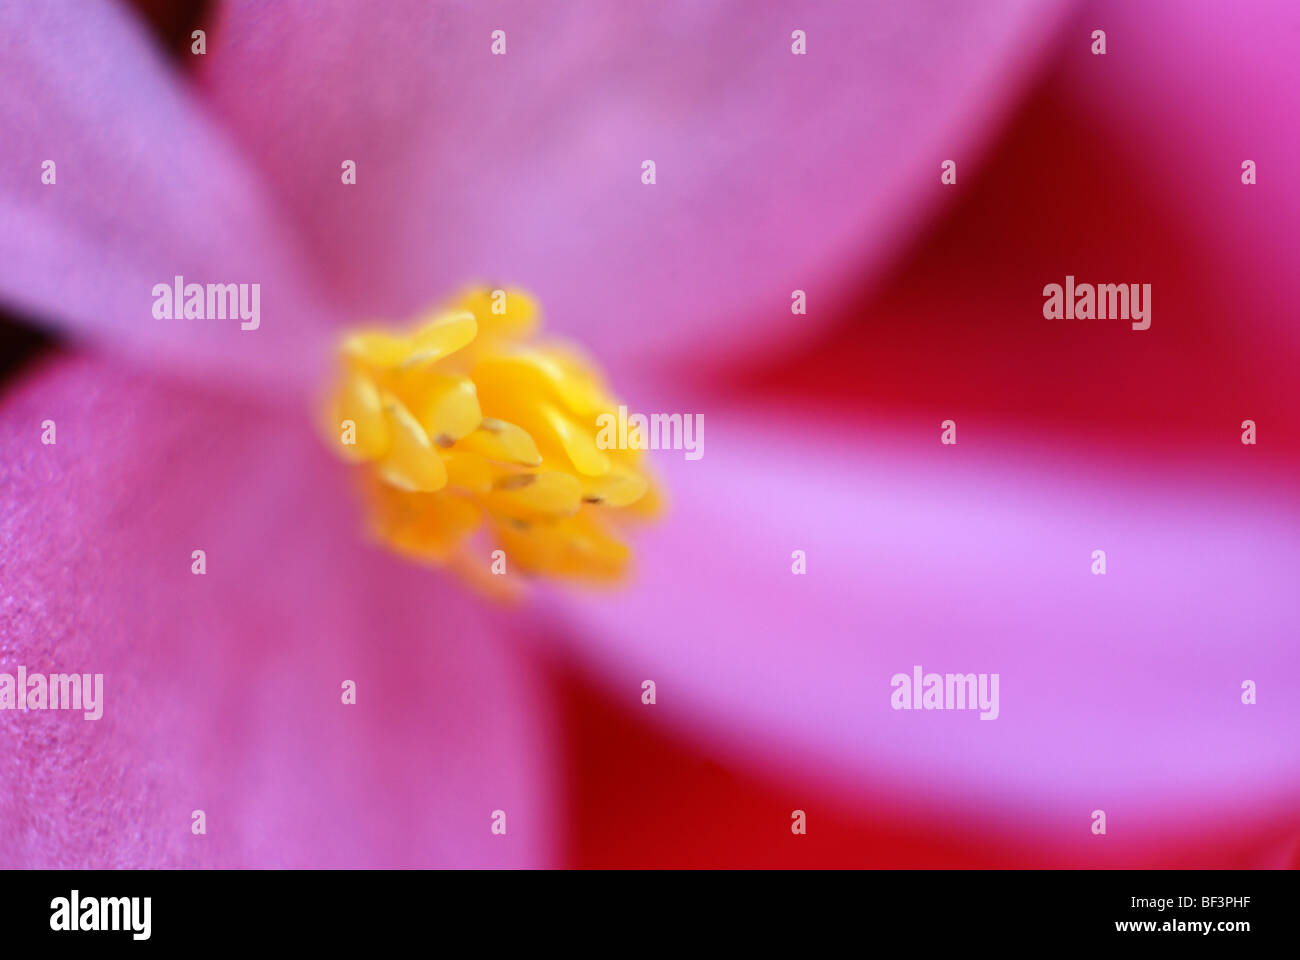 Begonie Blüte, grüner Hintergrund, rosa Blume, Pollen, rote Blume, Stamen, Begonie, Blume, Fyellow, Nahaufnahme, Nahaufnahme, Makro Stockfoto